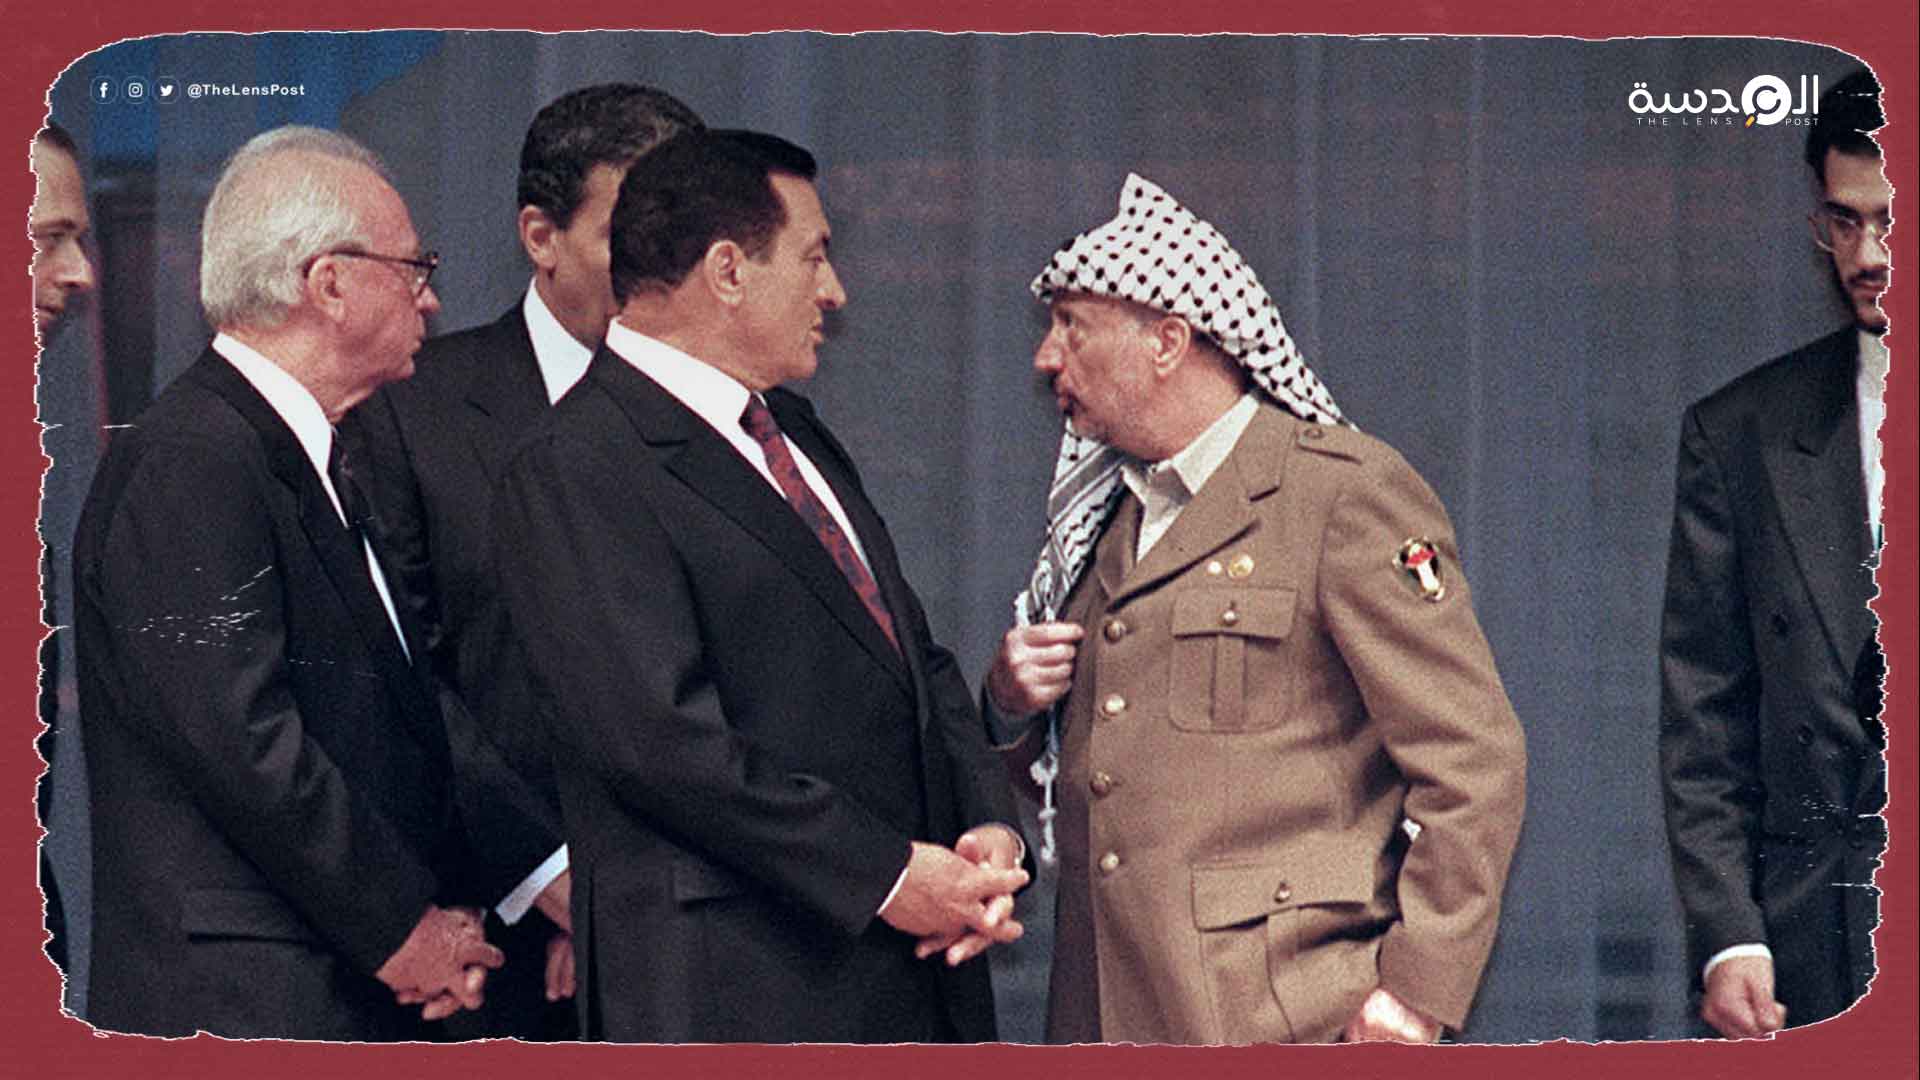 وثيقة: مبارك آخر من اتصل بعرفات وطلب منه تسليم السلطة